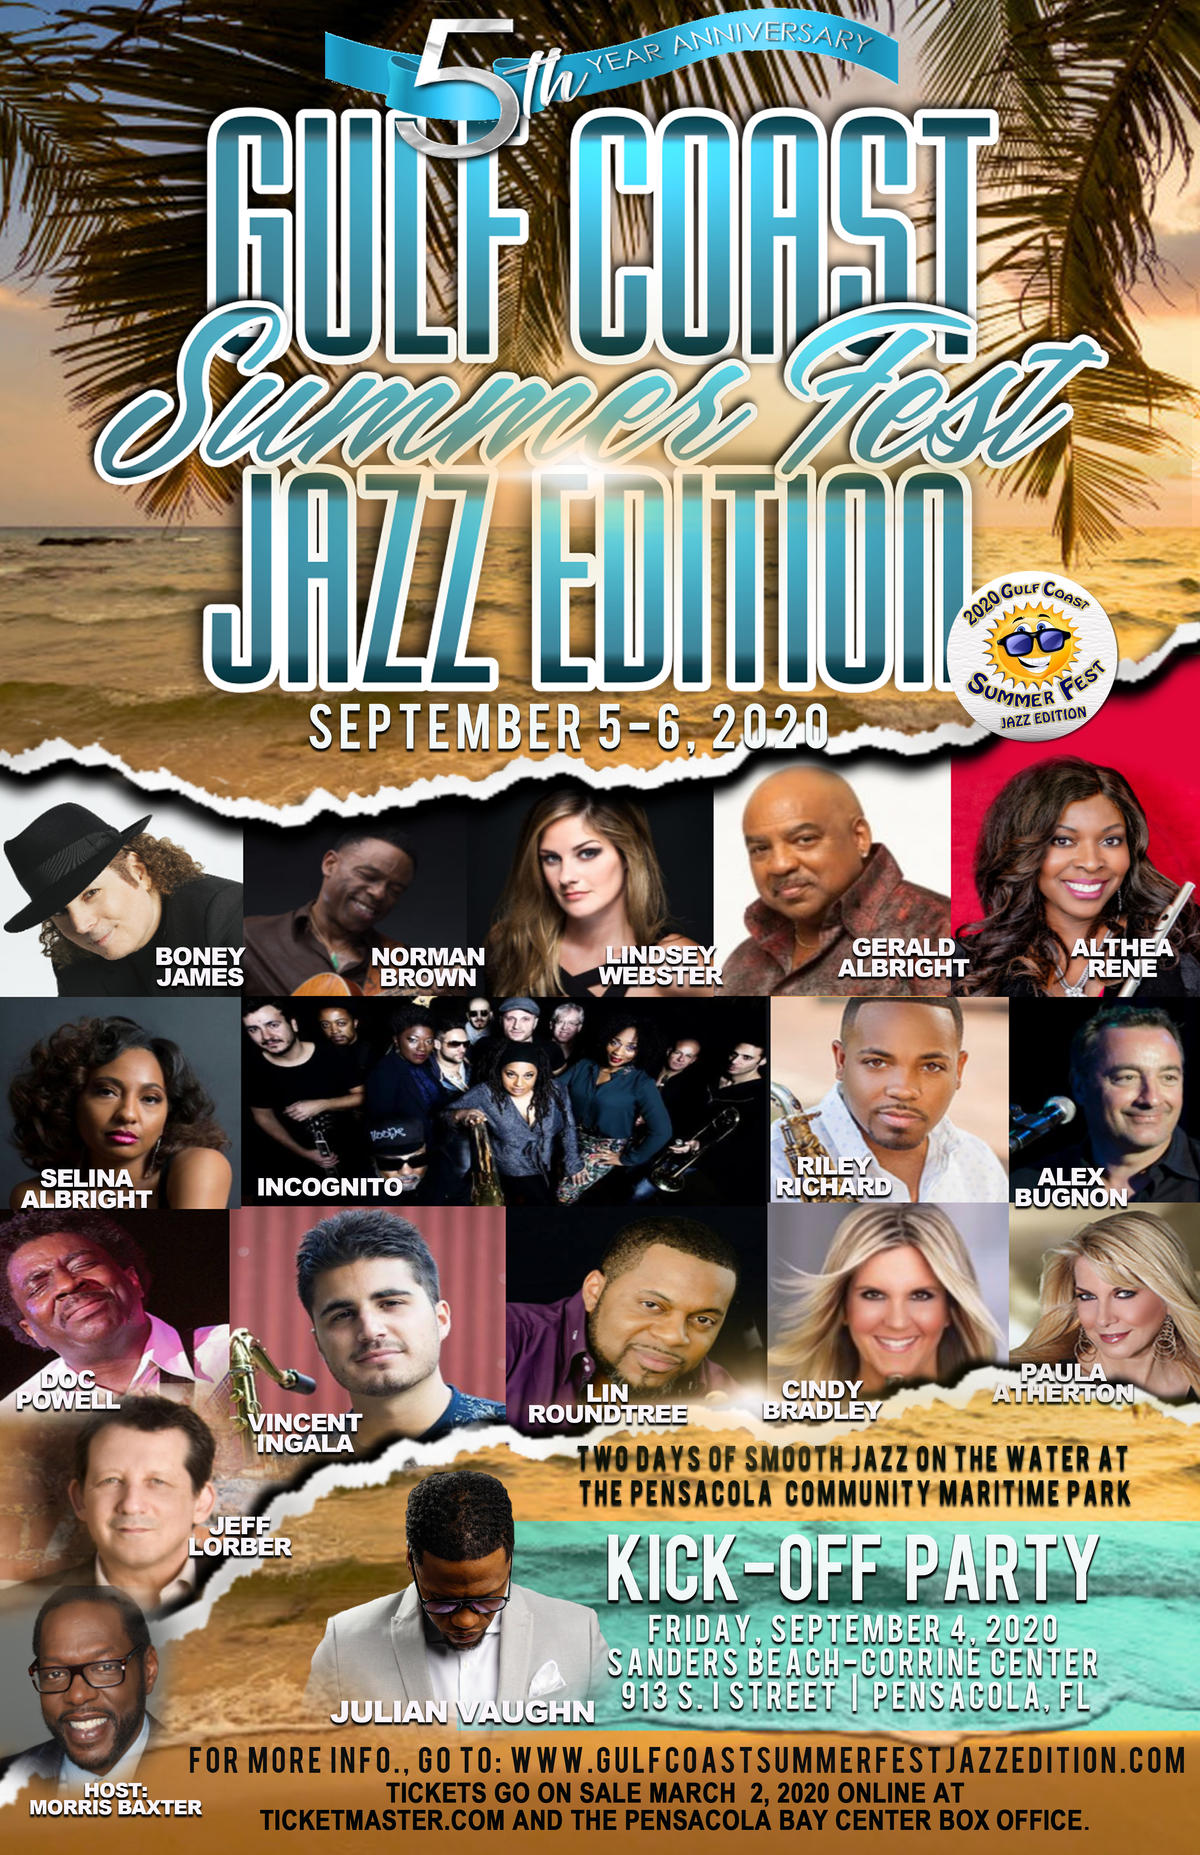 Gulf Coast Summer Fest Jazz Edition Tickets On Sale Beginning March 2